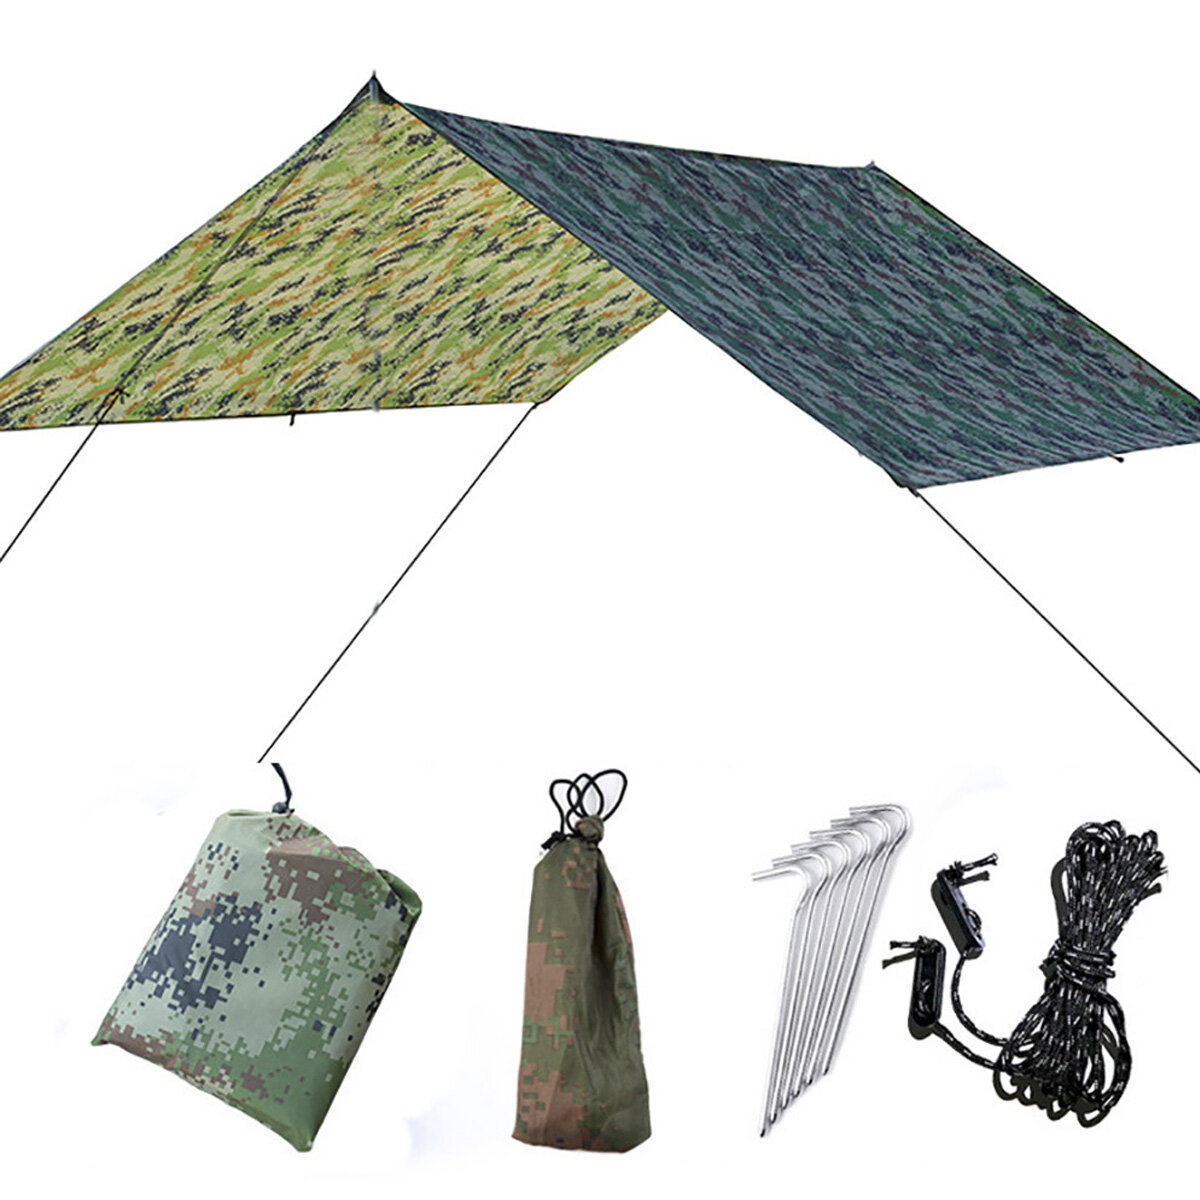 30×29cmの日よけキャノピー、抗UVオーニング、防水屋根付きテント、多機能ピクニックマット、屋外キャンプガーデン。